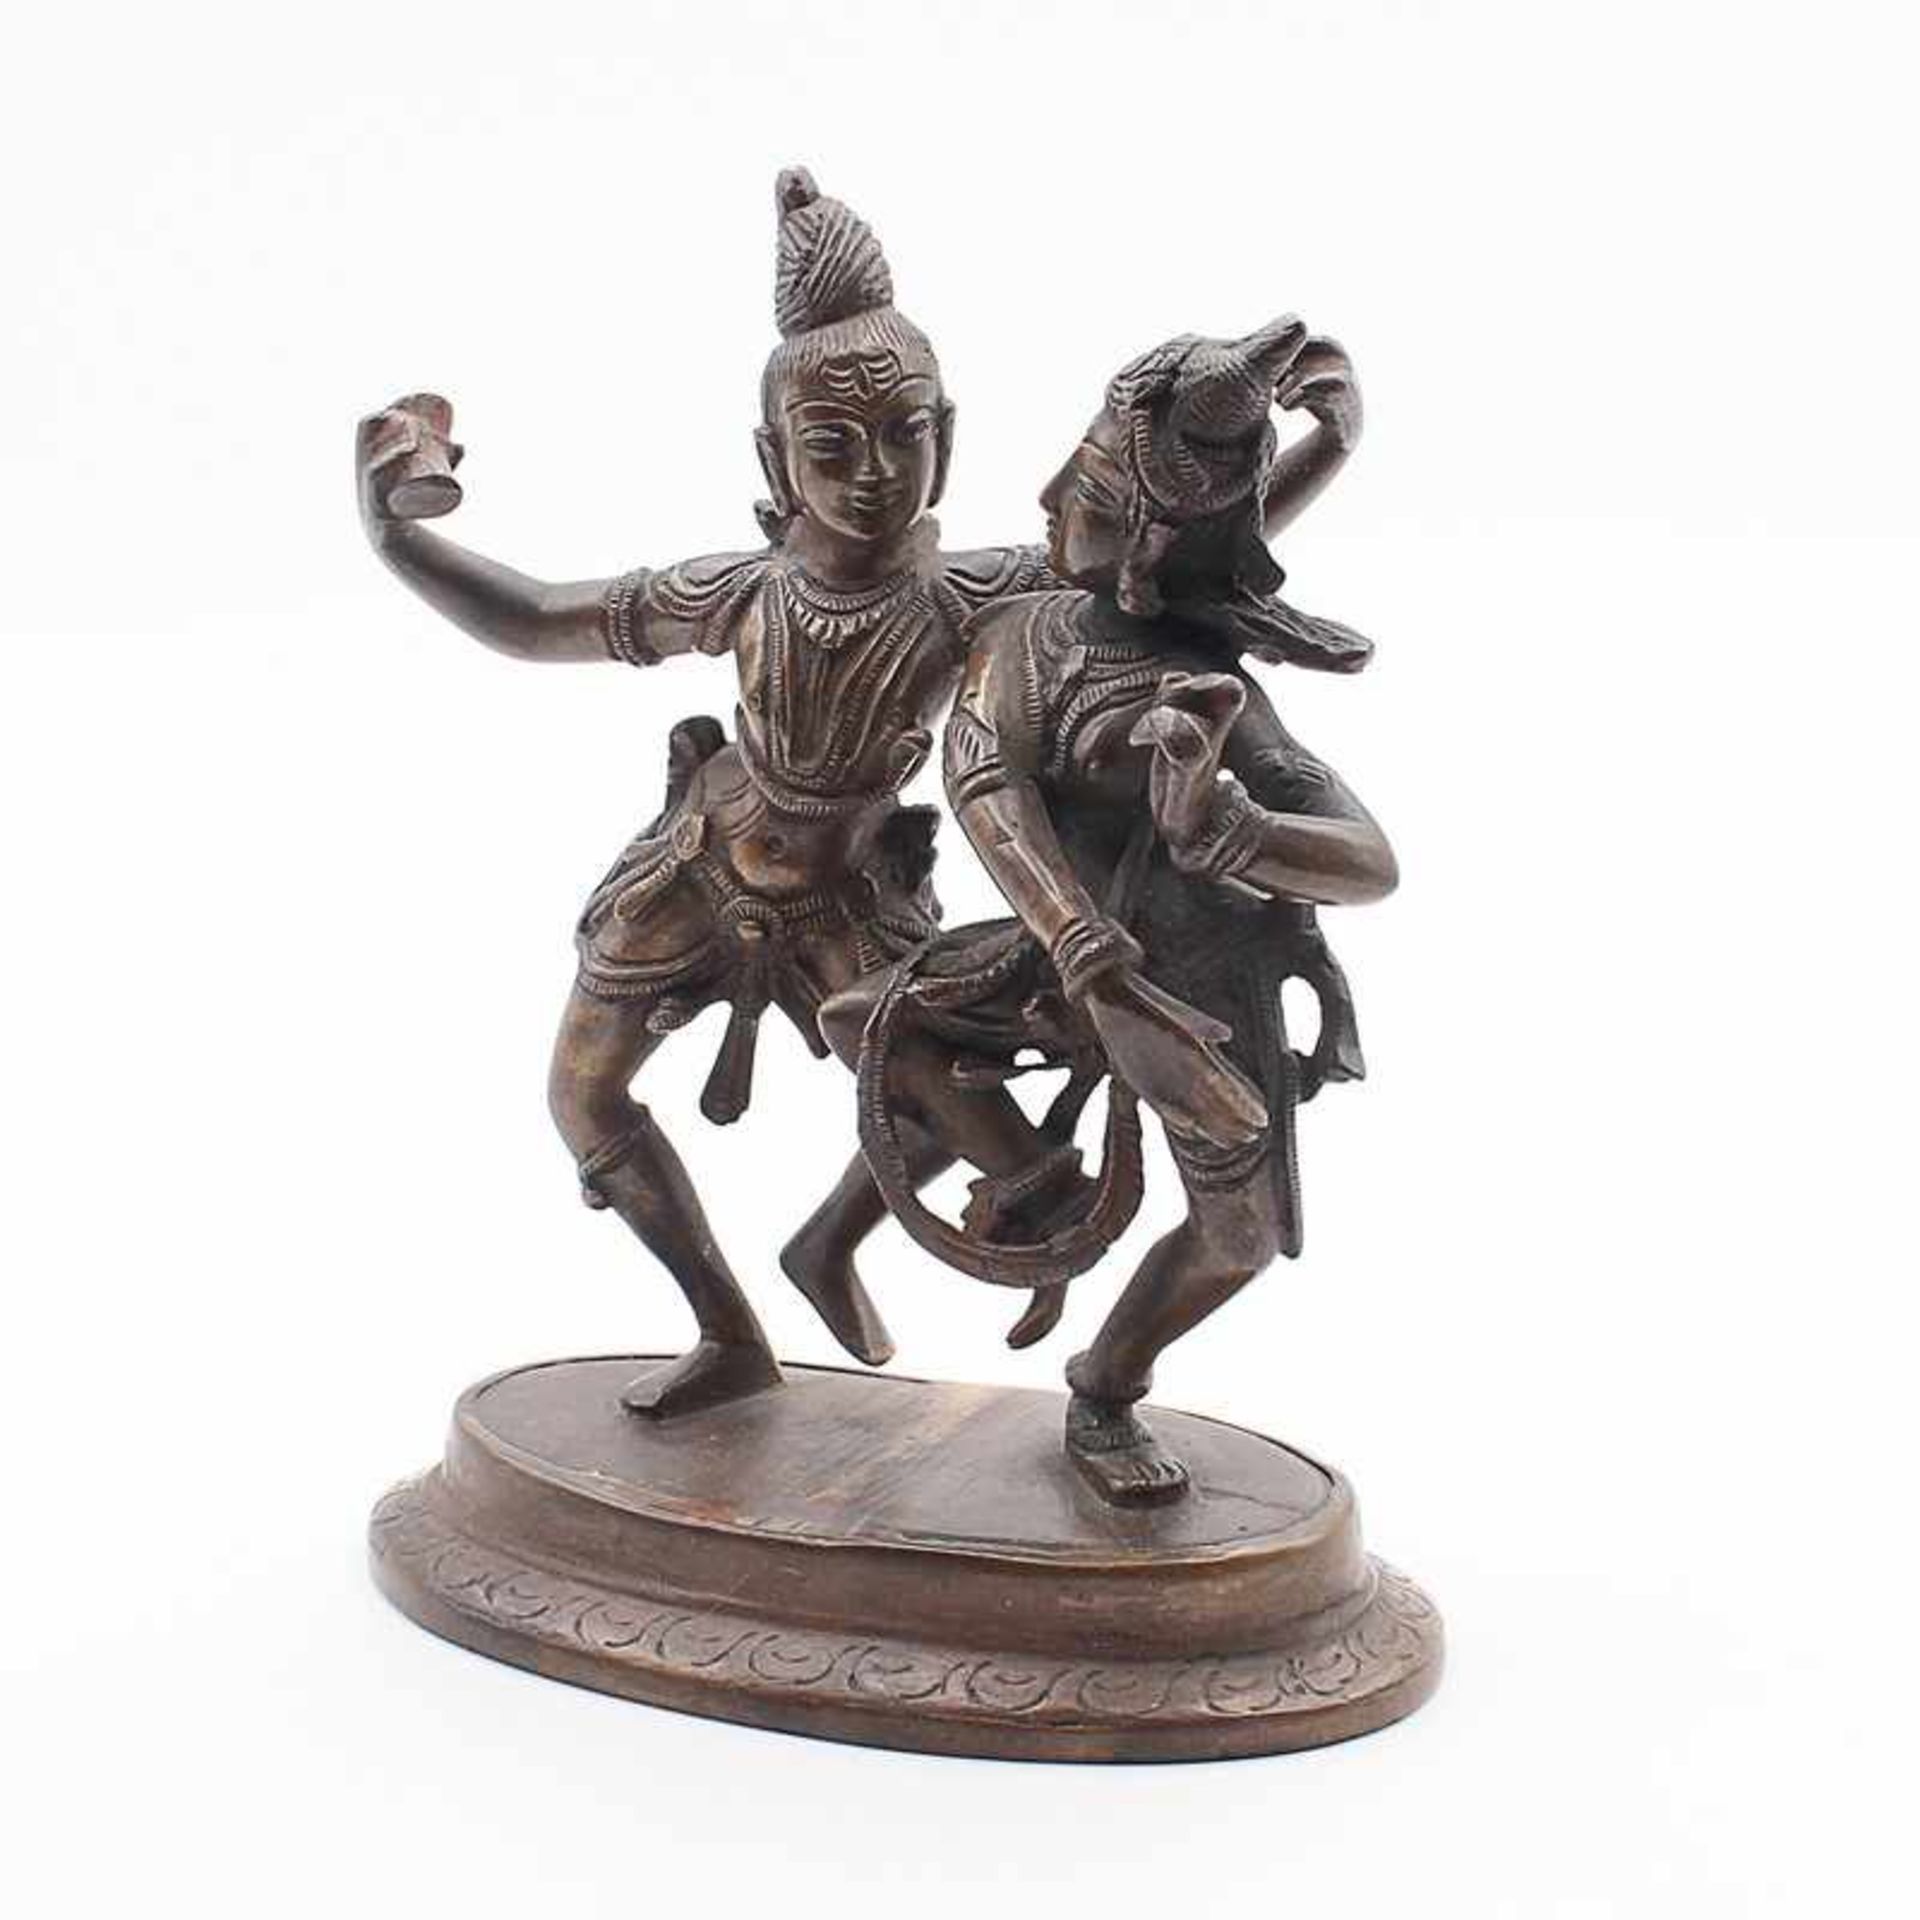 Figur - Hinduismus20.Jh., Indien, Bronze, patiniert, 2x hinduistische Gottheiten im Ritualtanz,